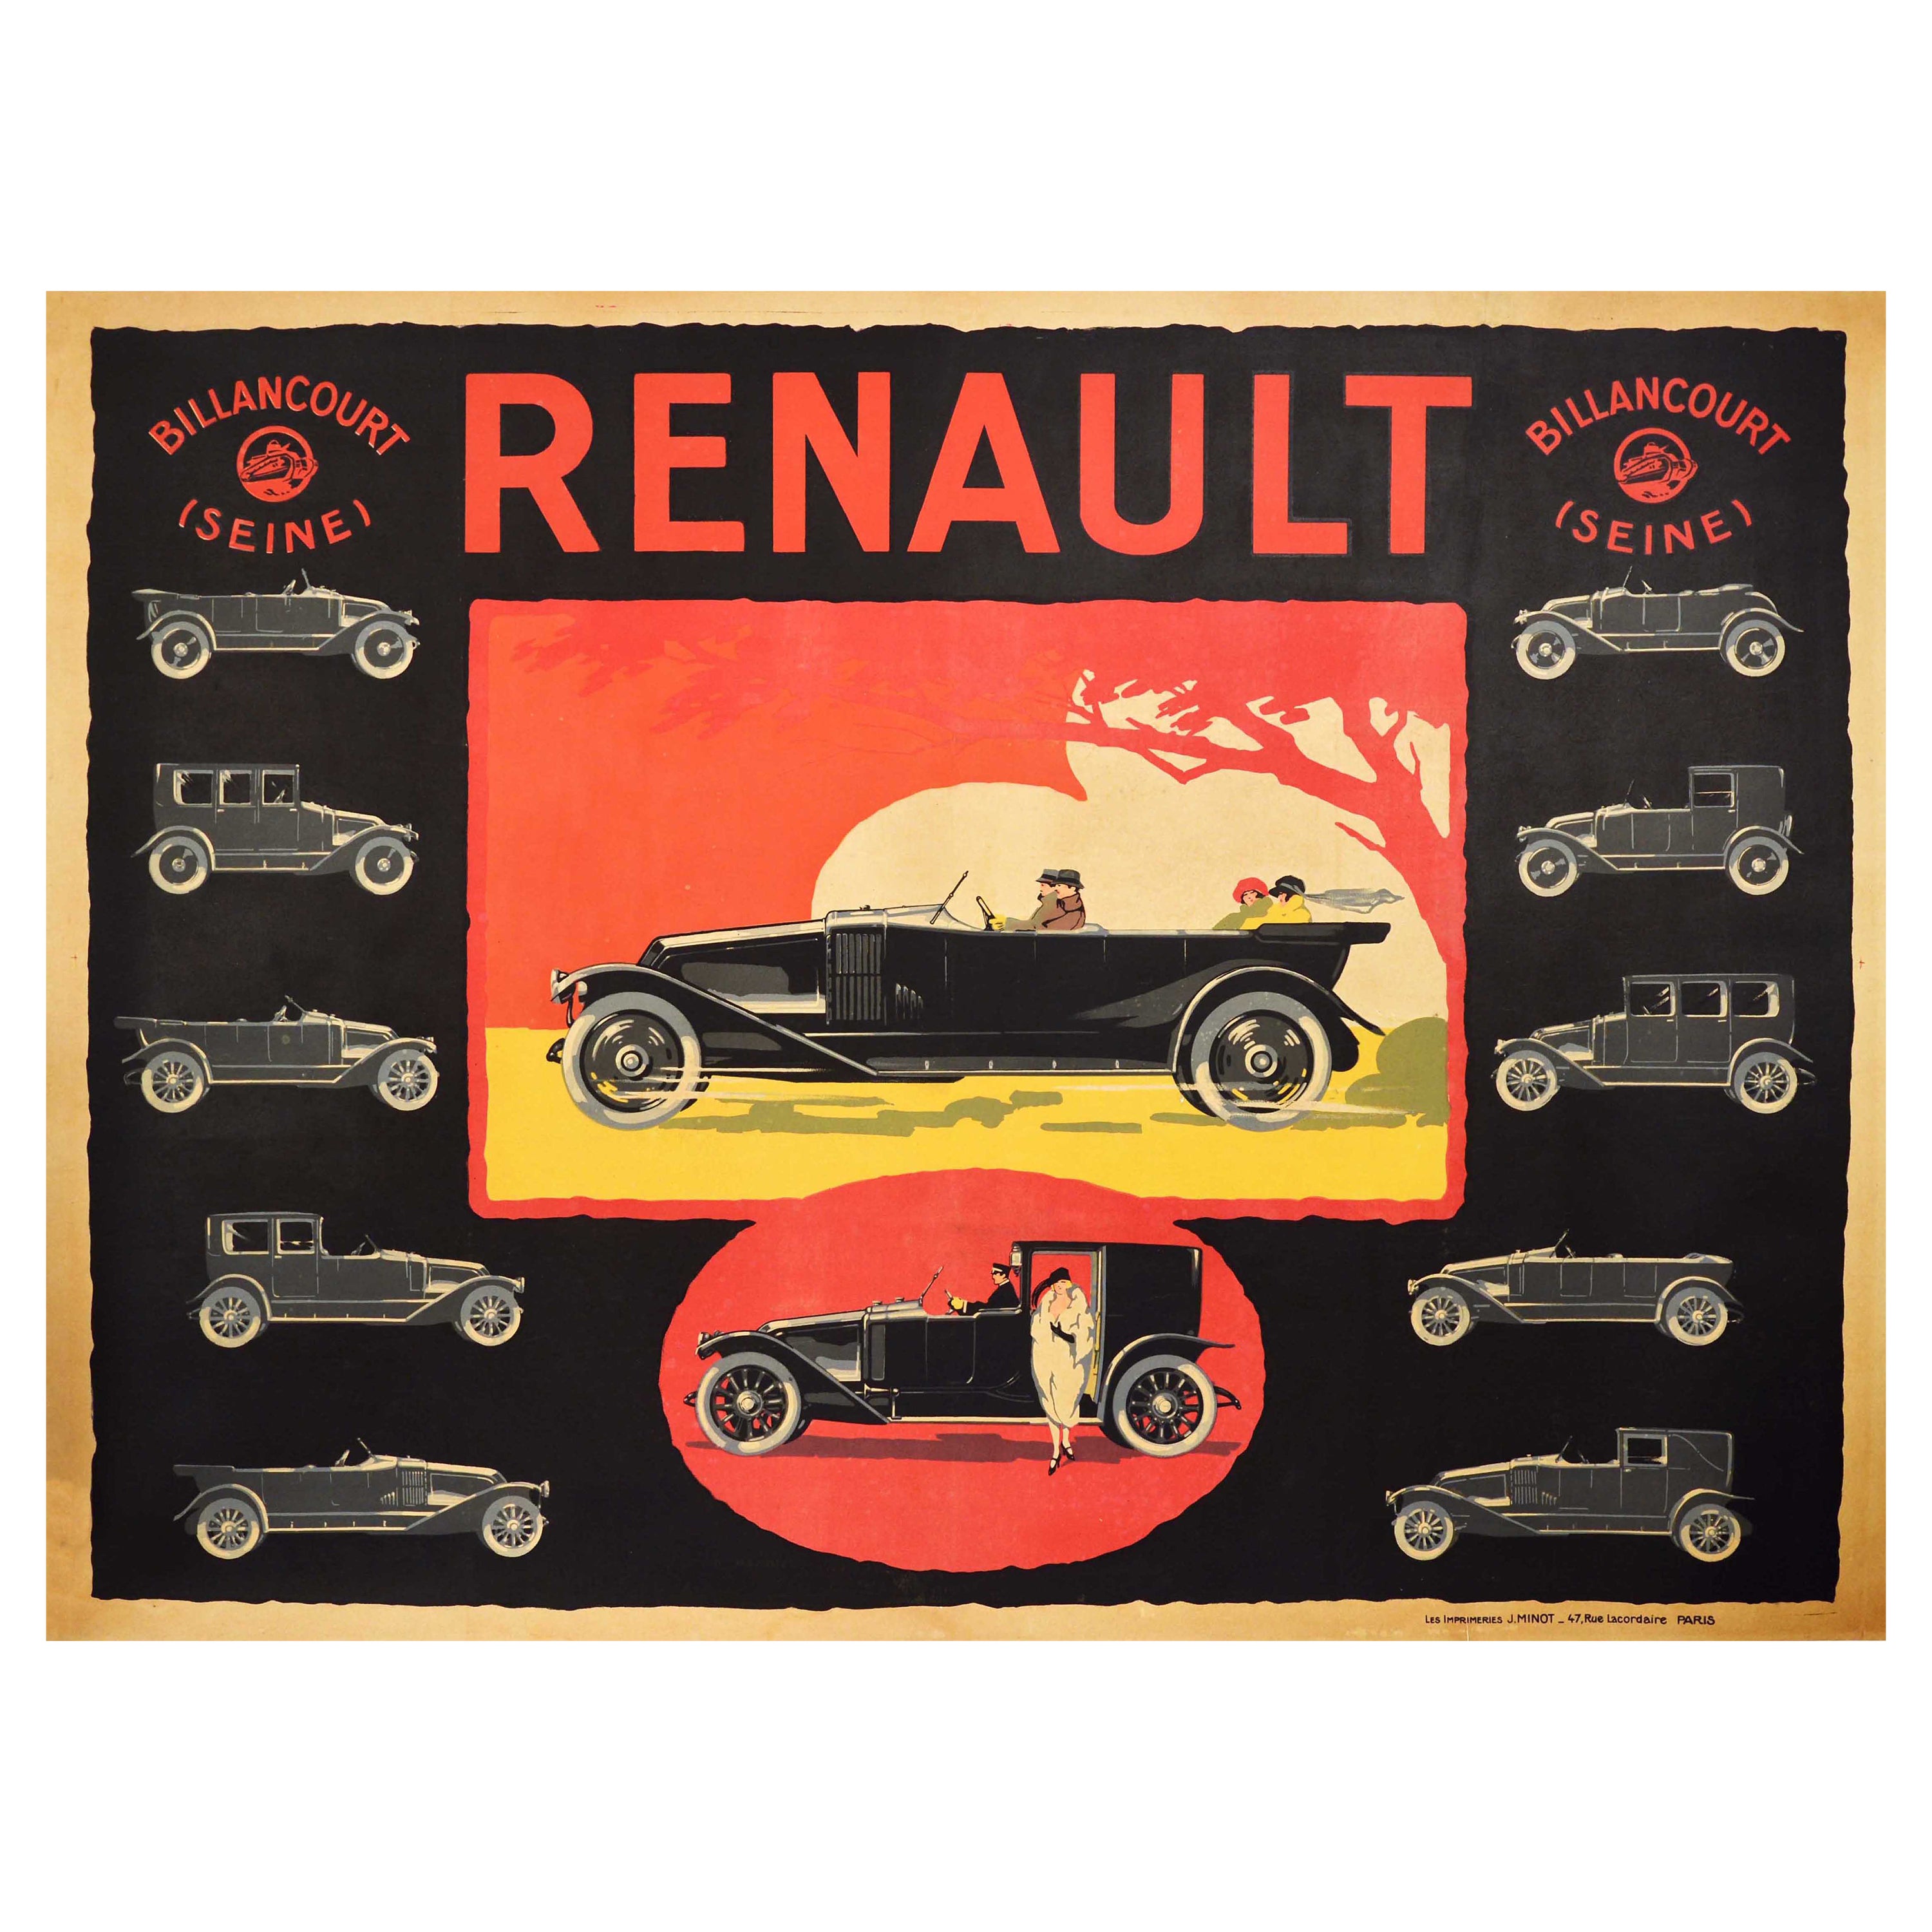 Original Antique Advertising Poster Renault Billancourt Seine Classic Car Models